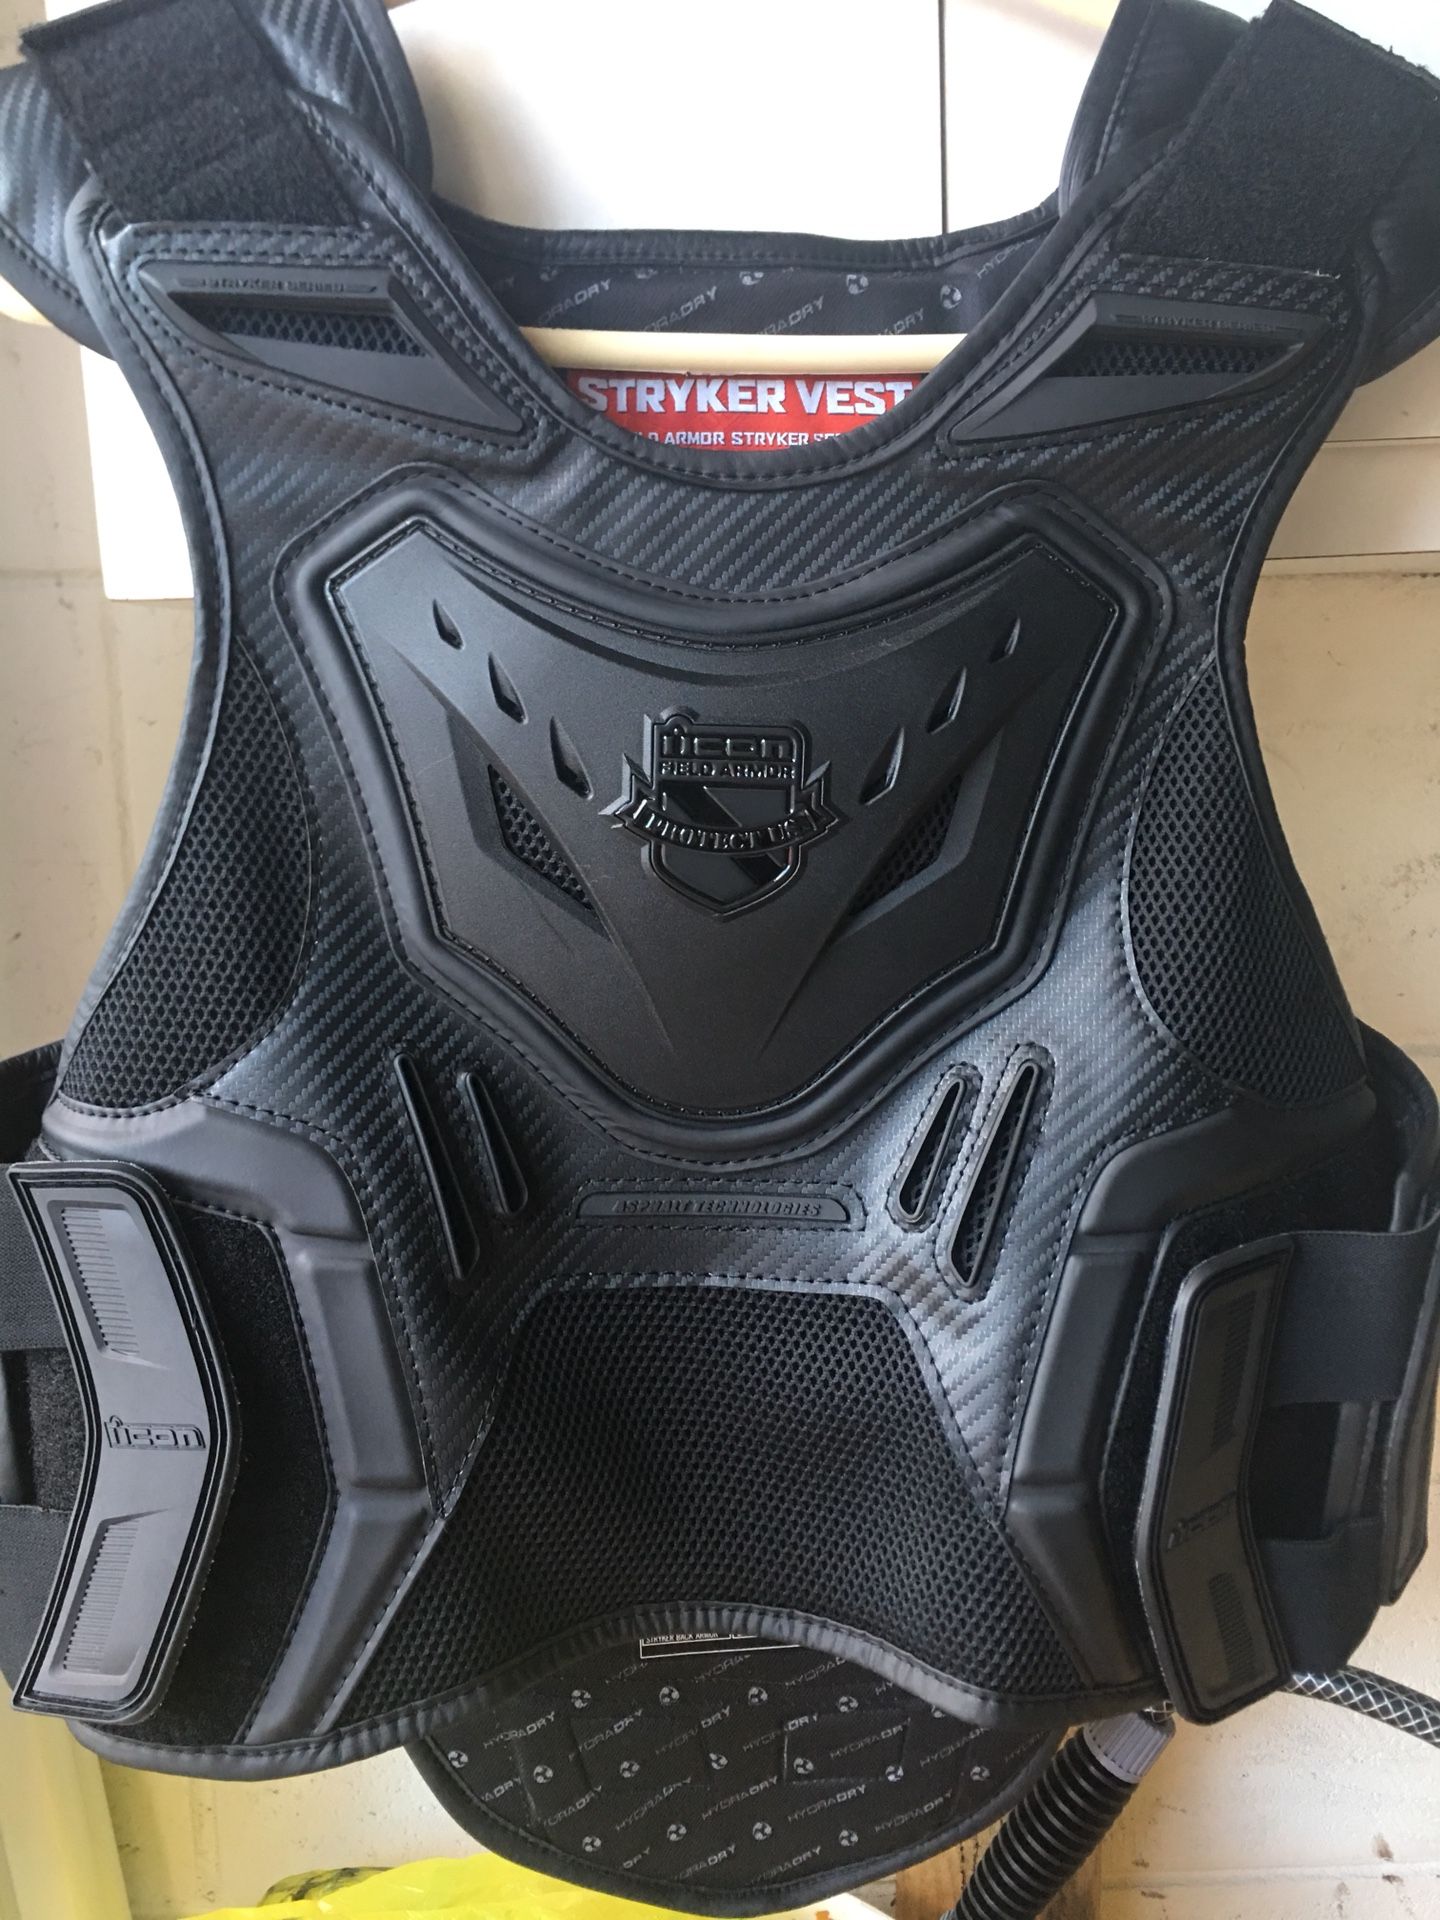 Brand new armor vest